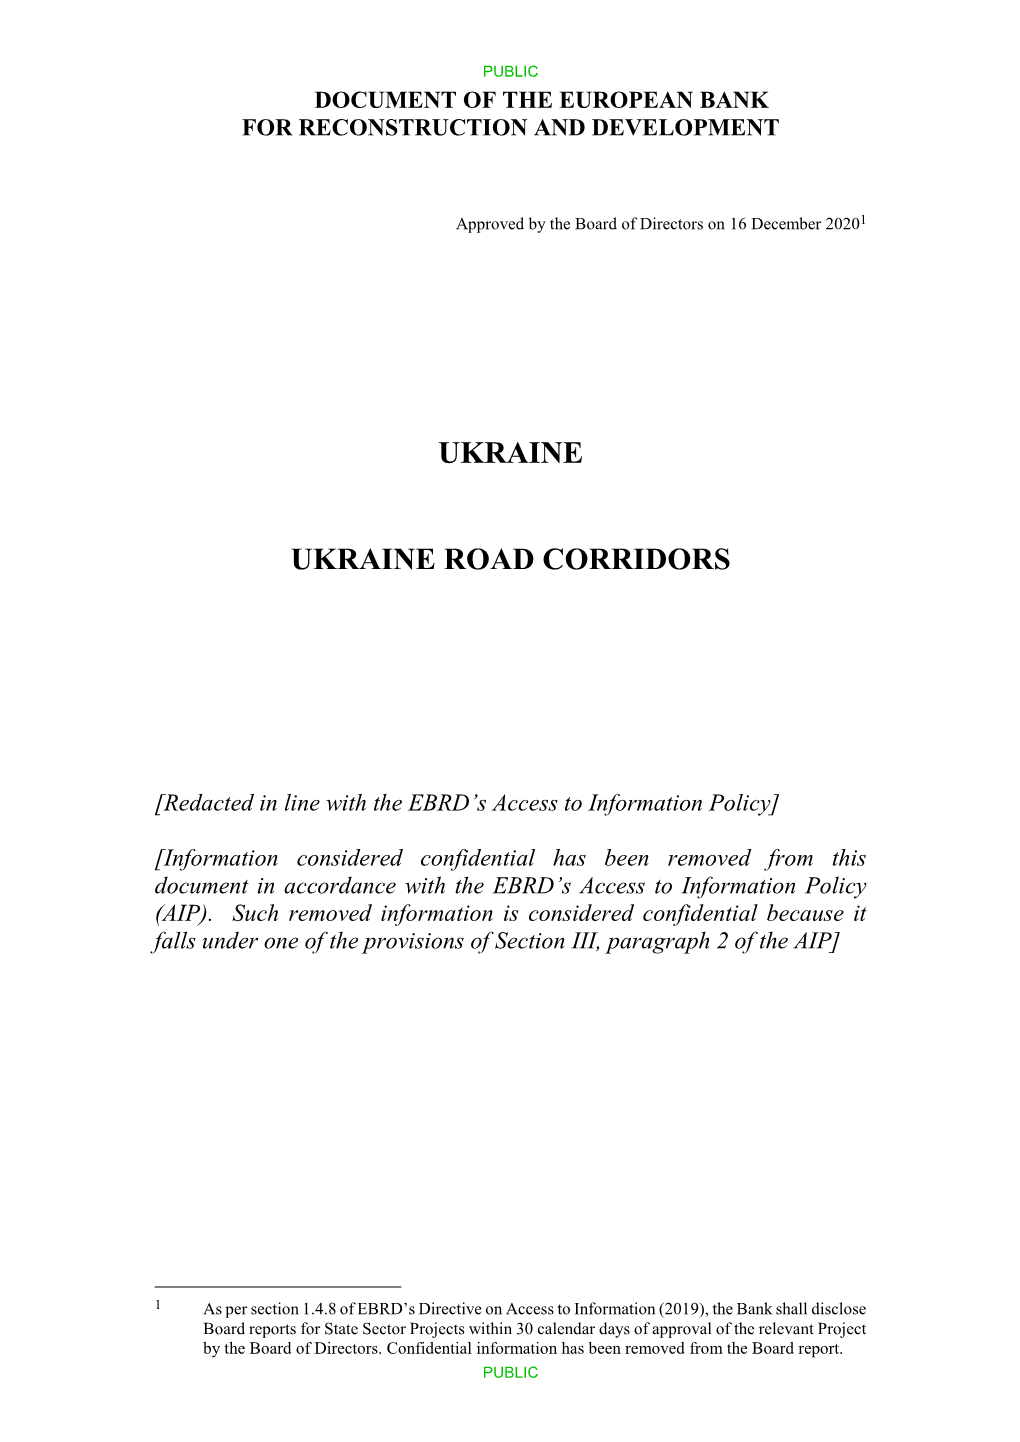 Ukraine Road Corridors Board Report